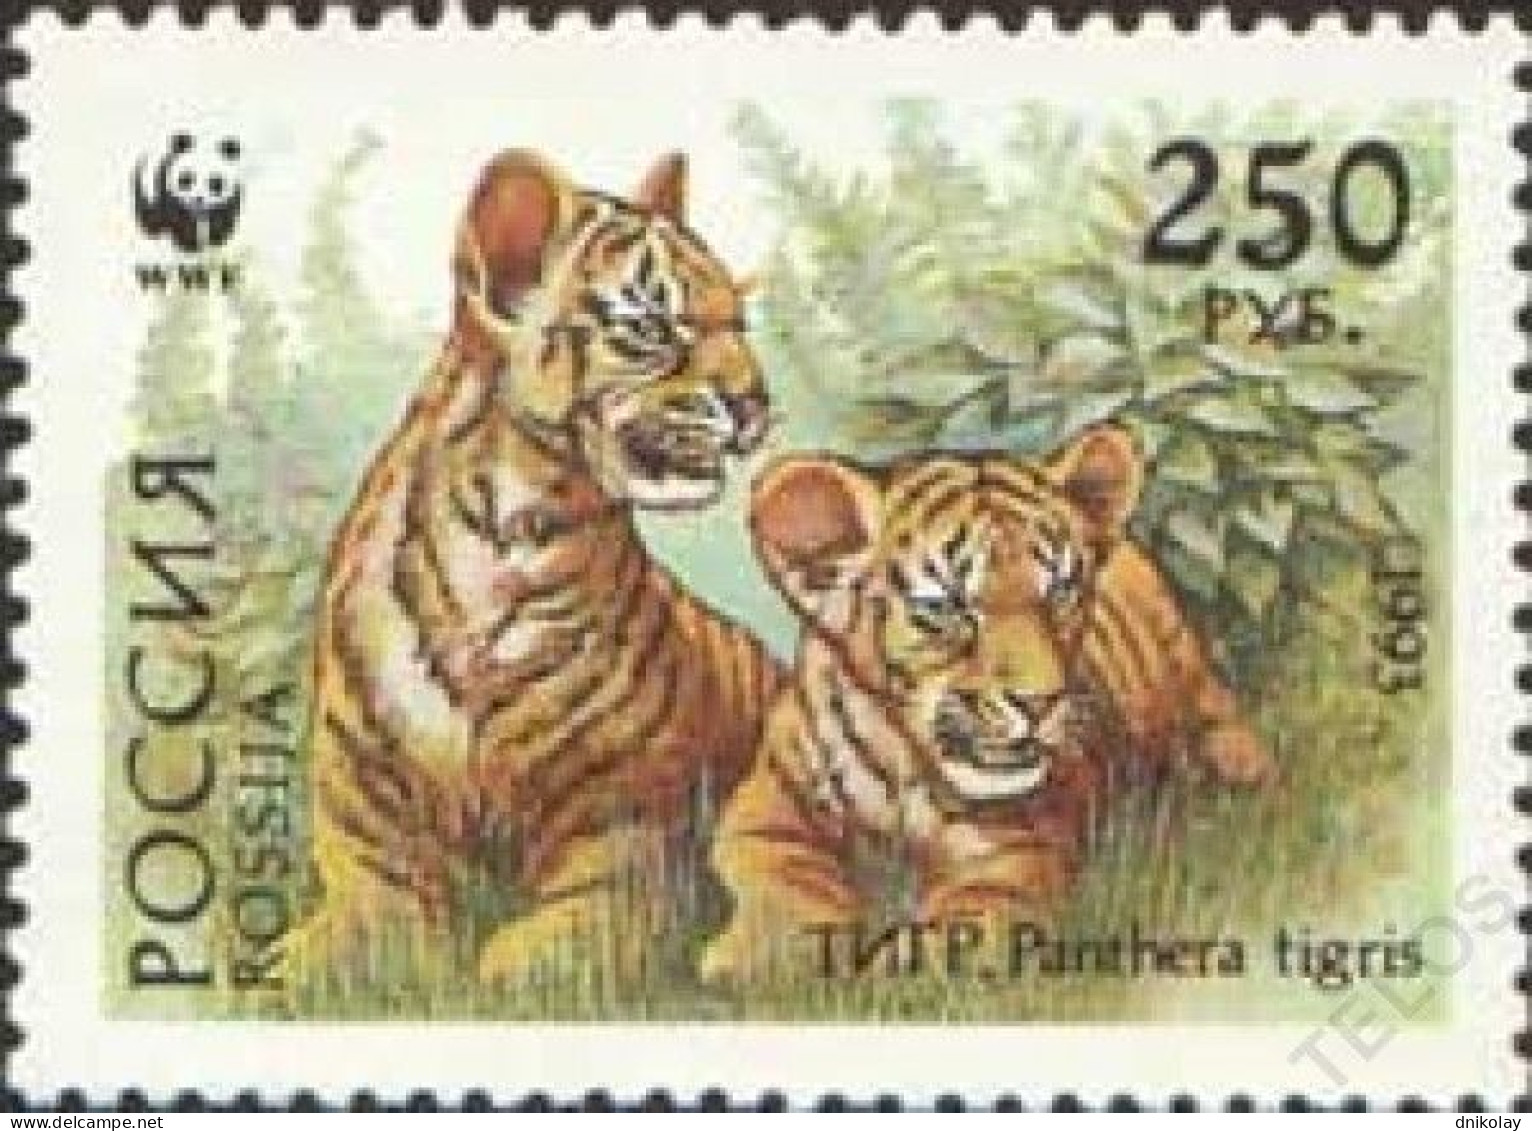 1993 336 Russia Ussurian Tiger MNH - Ongebruikt